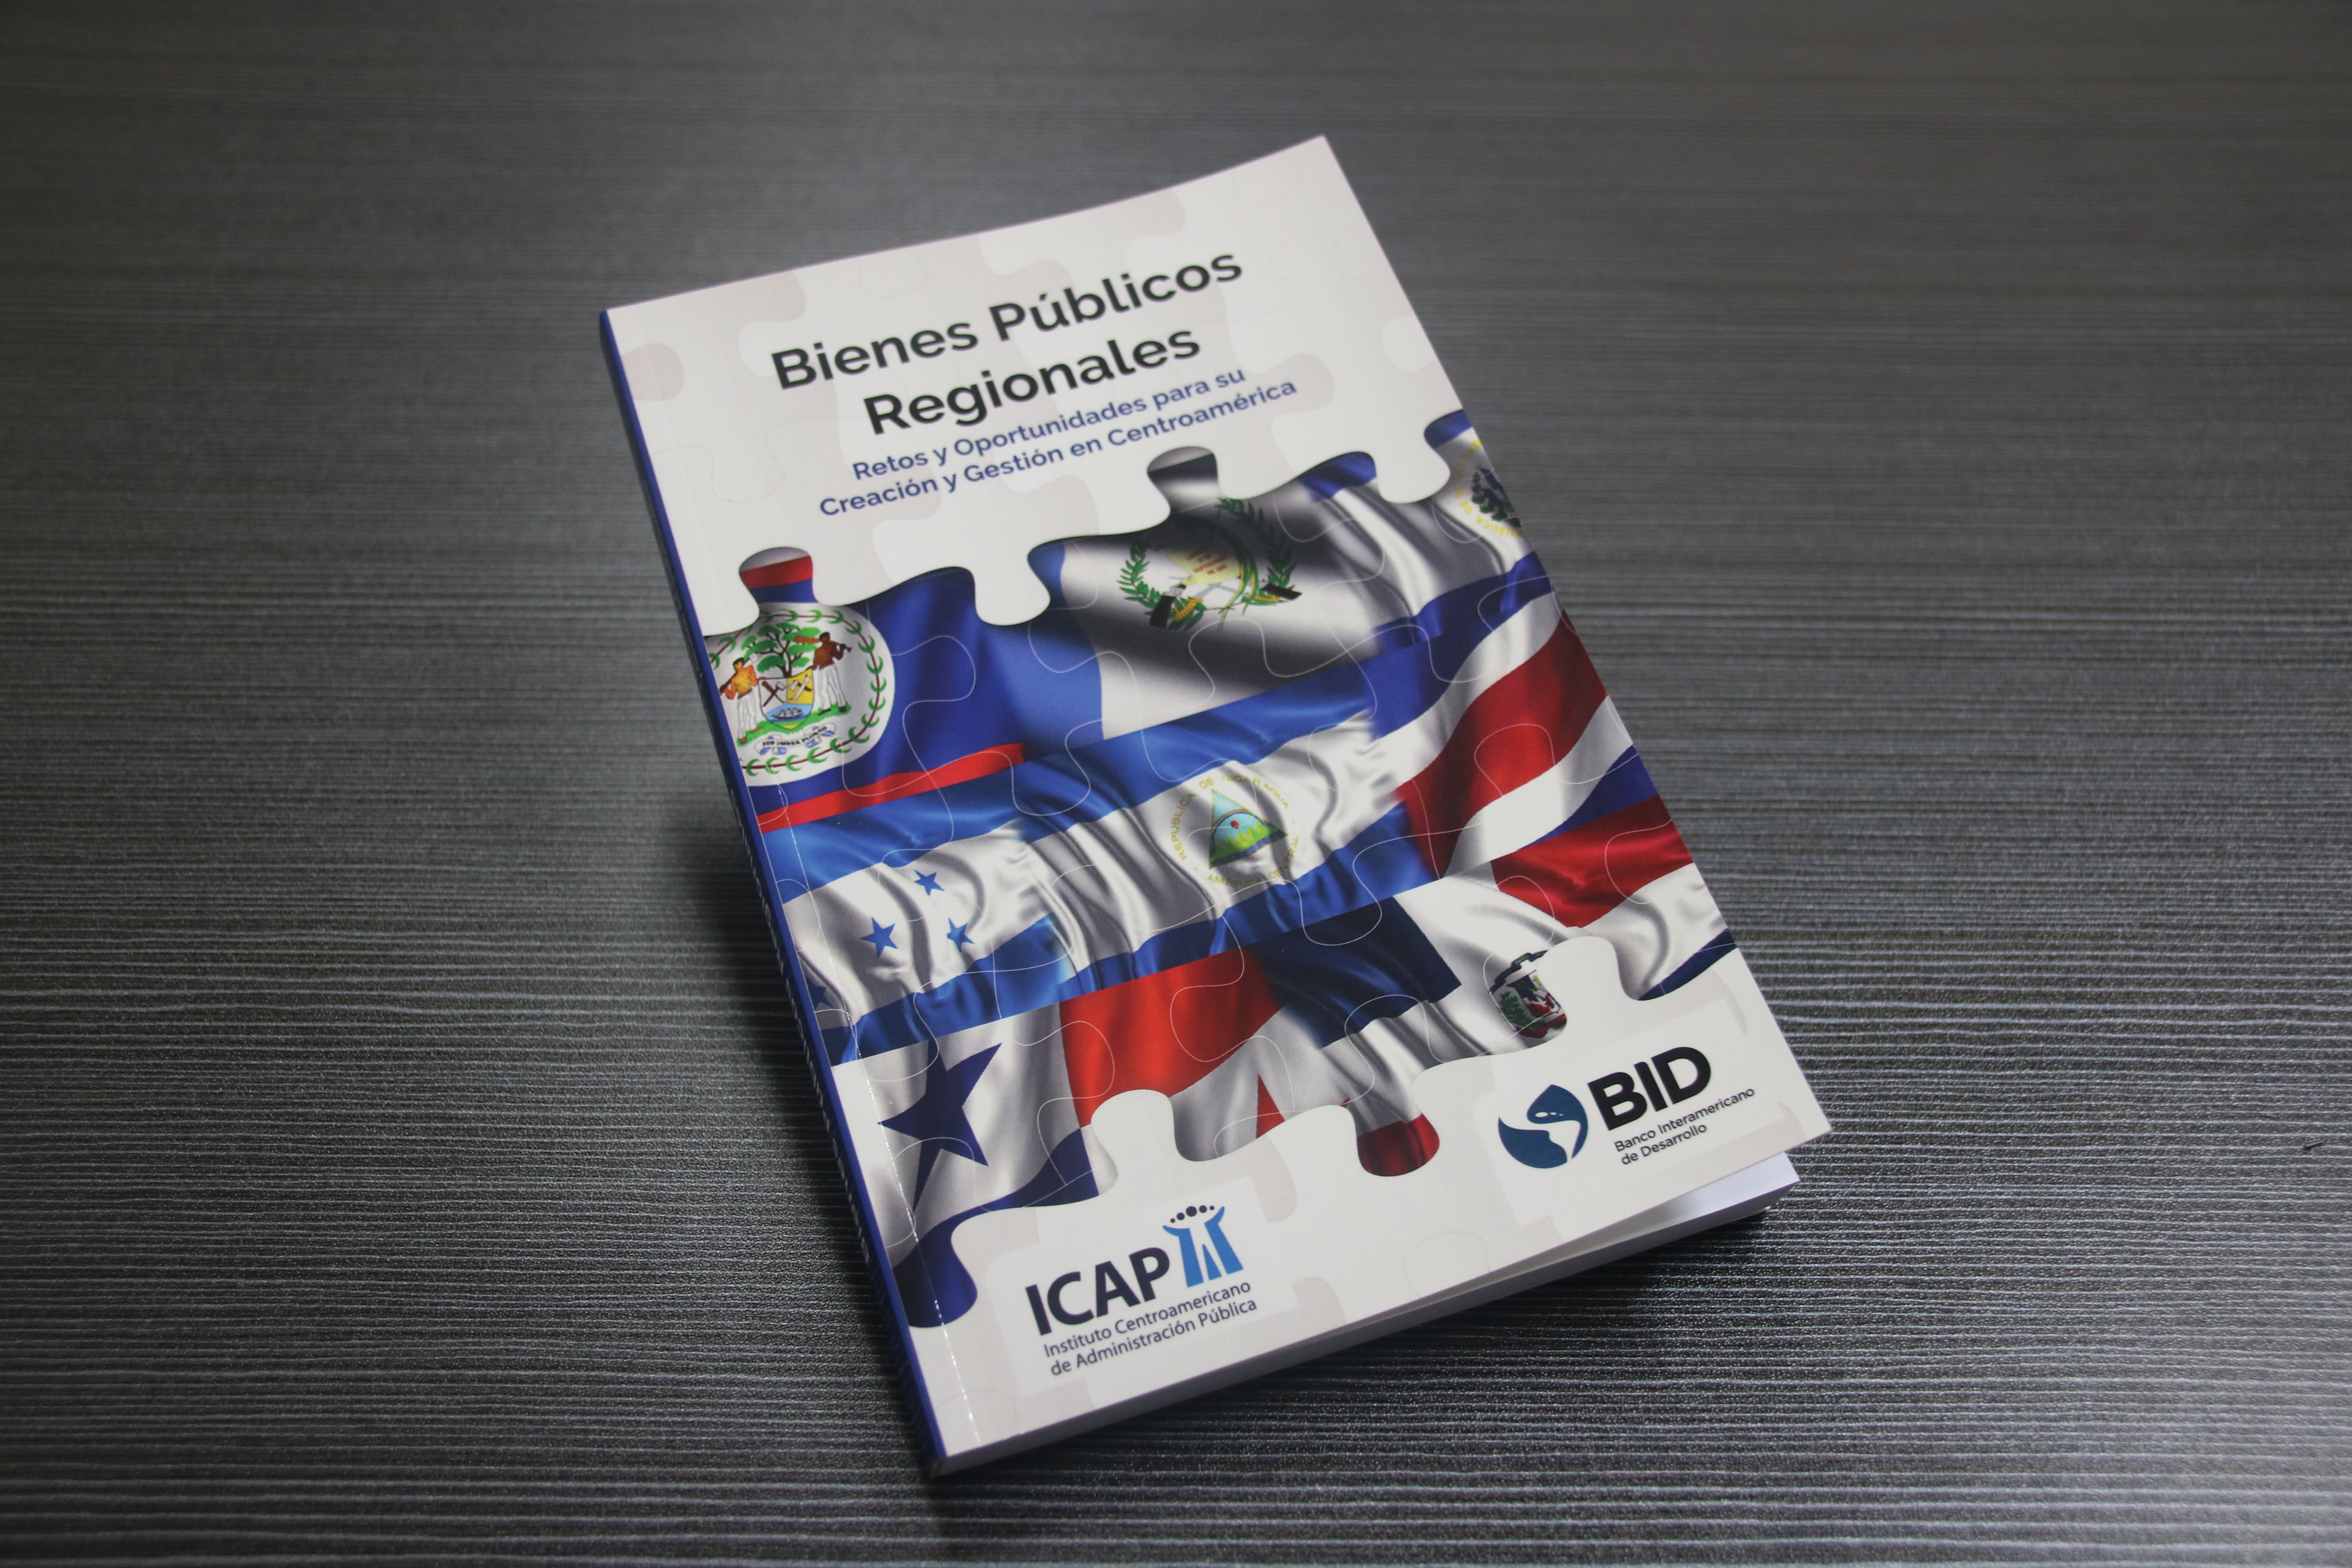 El ICAP presenta su nueva publicación: “Bienes Públicos Regionales, Retos y Oportunidades para su Creación y Gestión en Centroamérica”